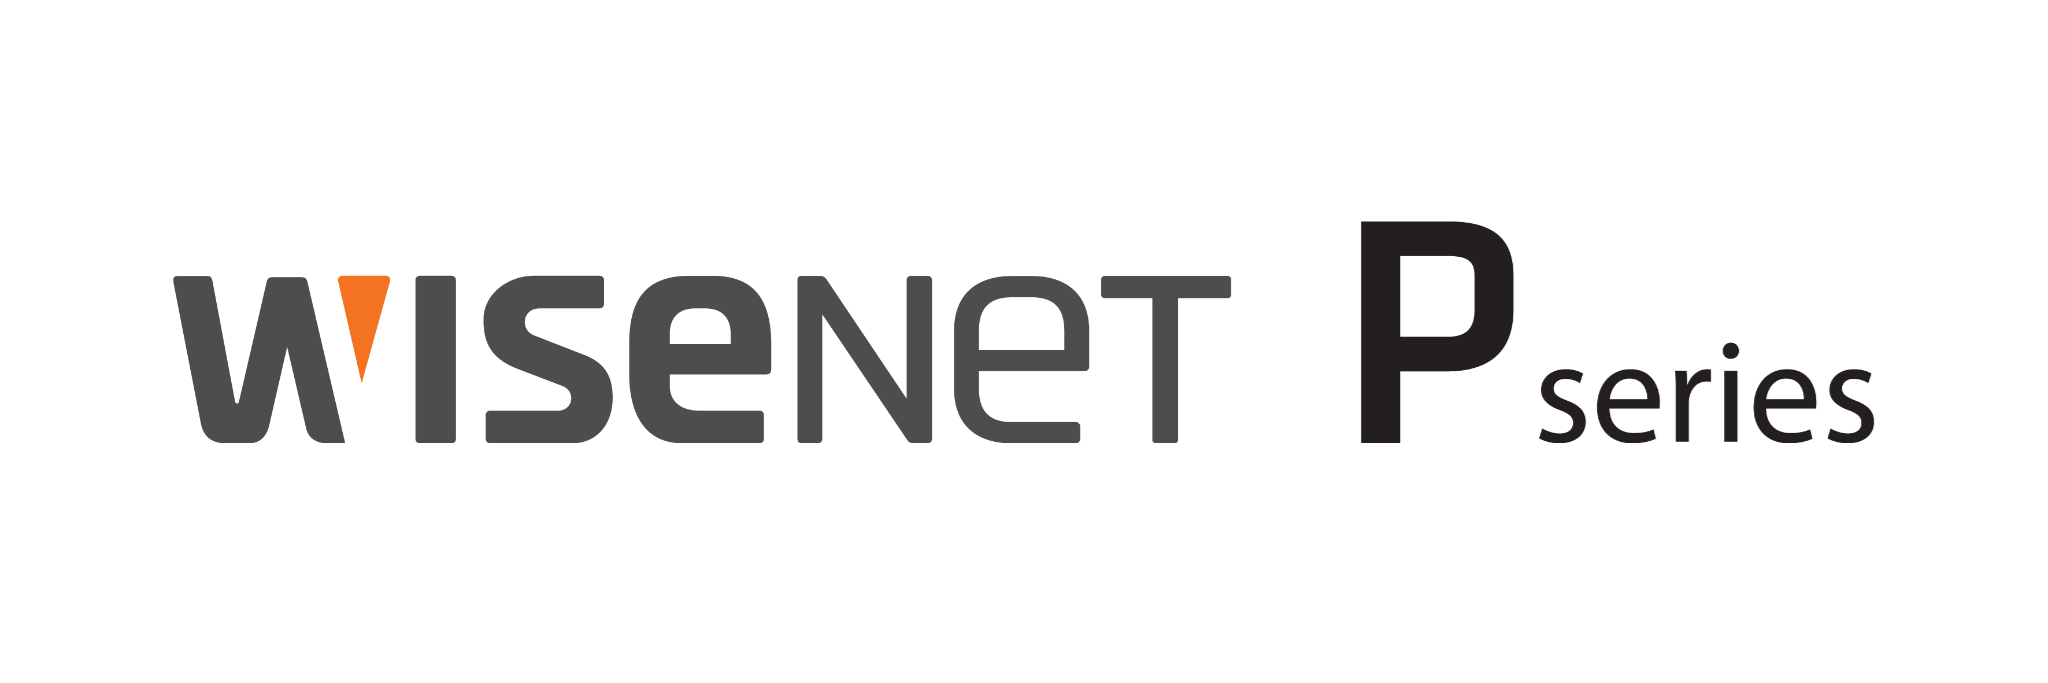 Wisenet P series logo